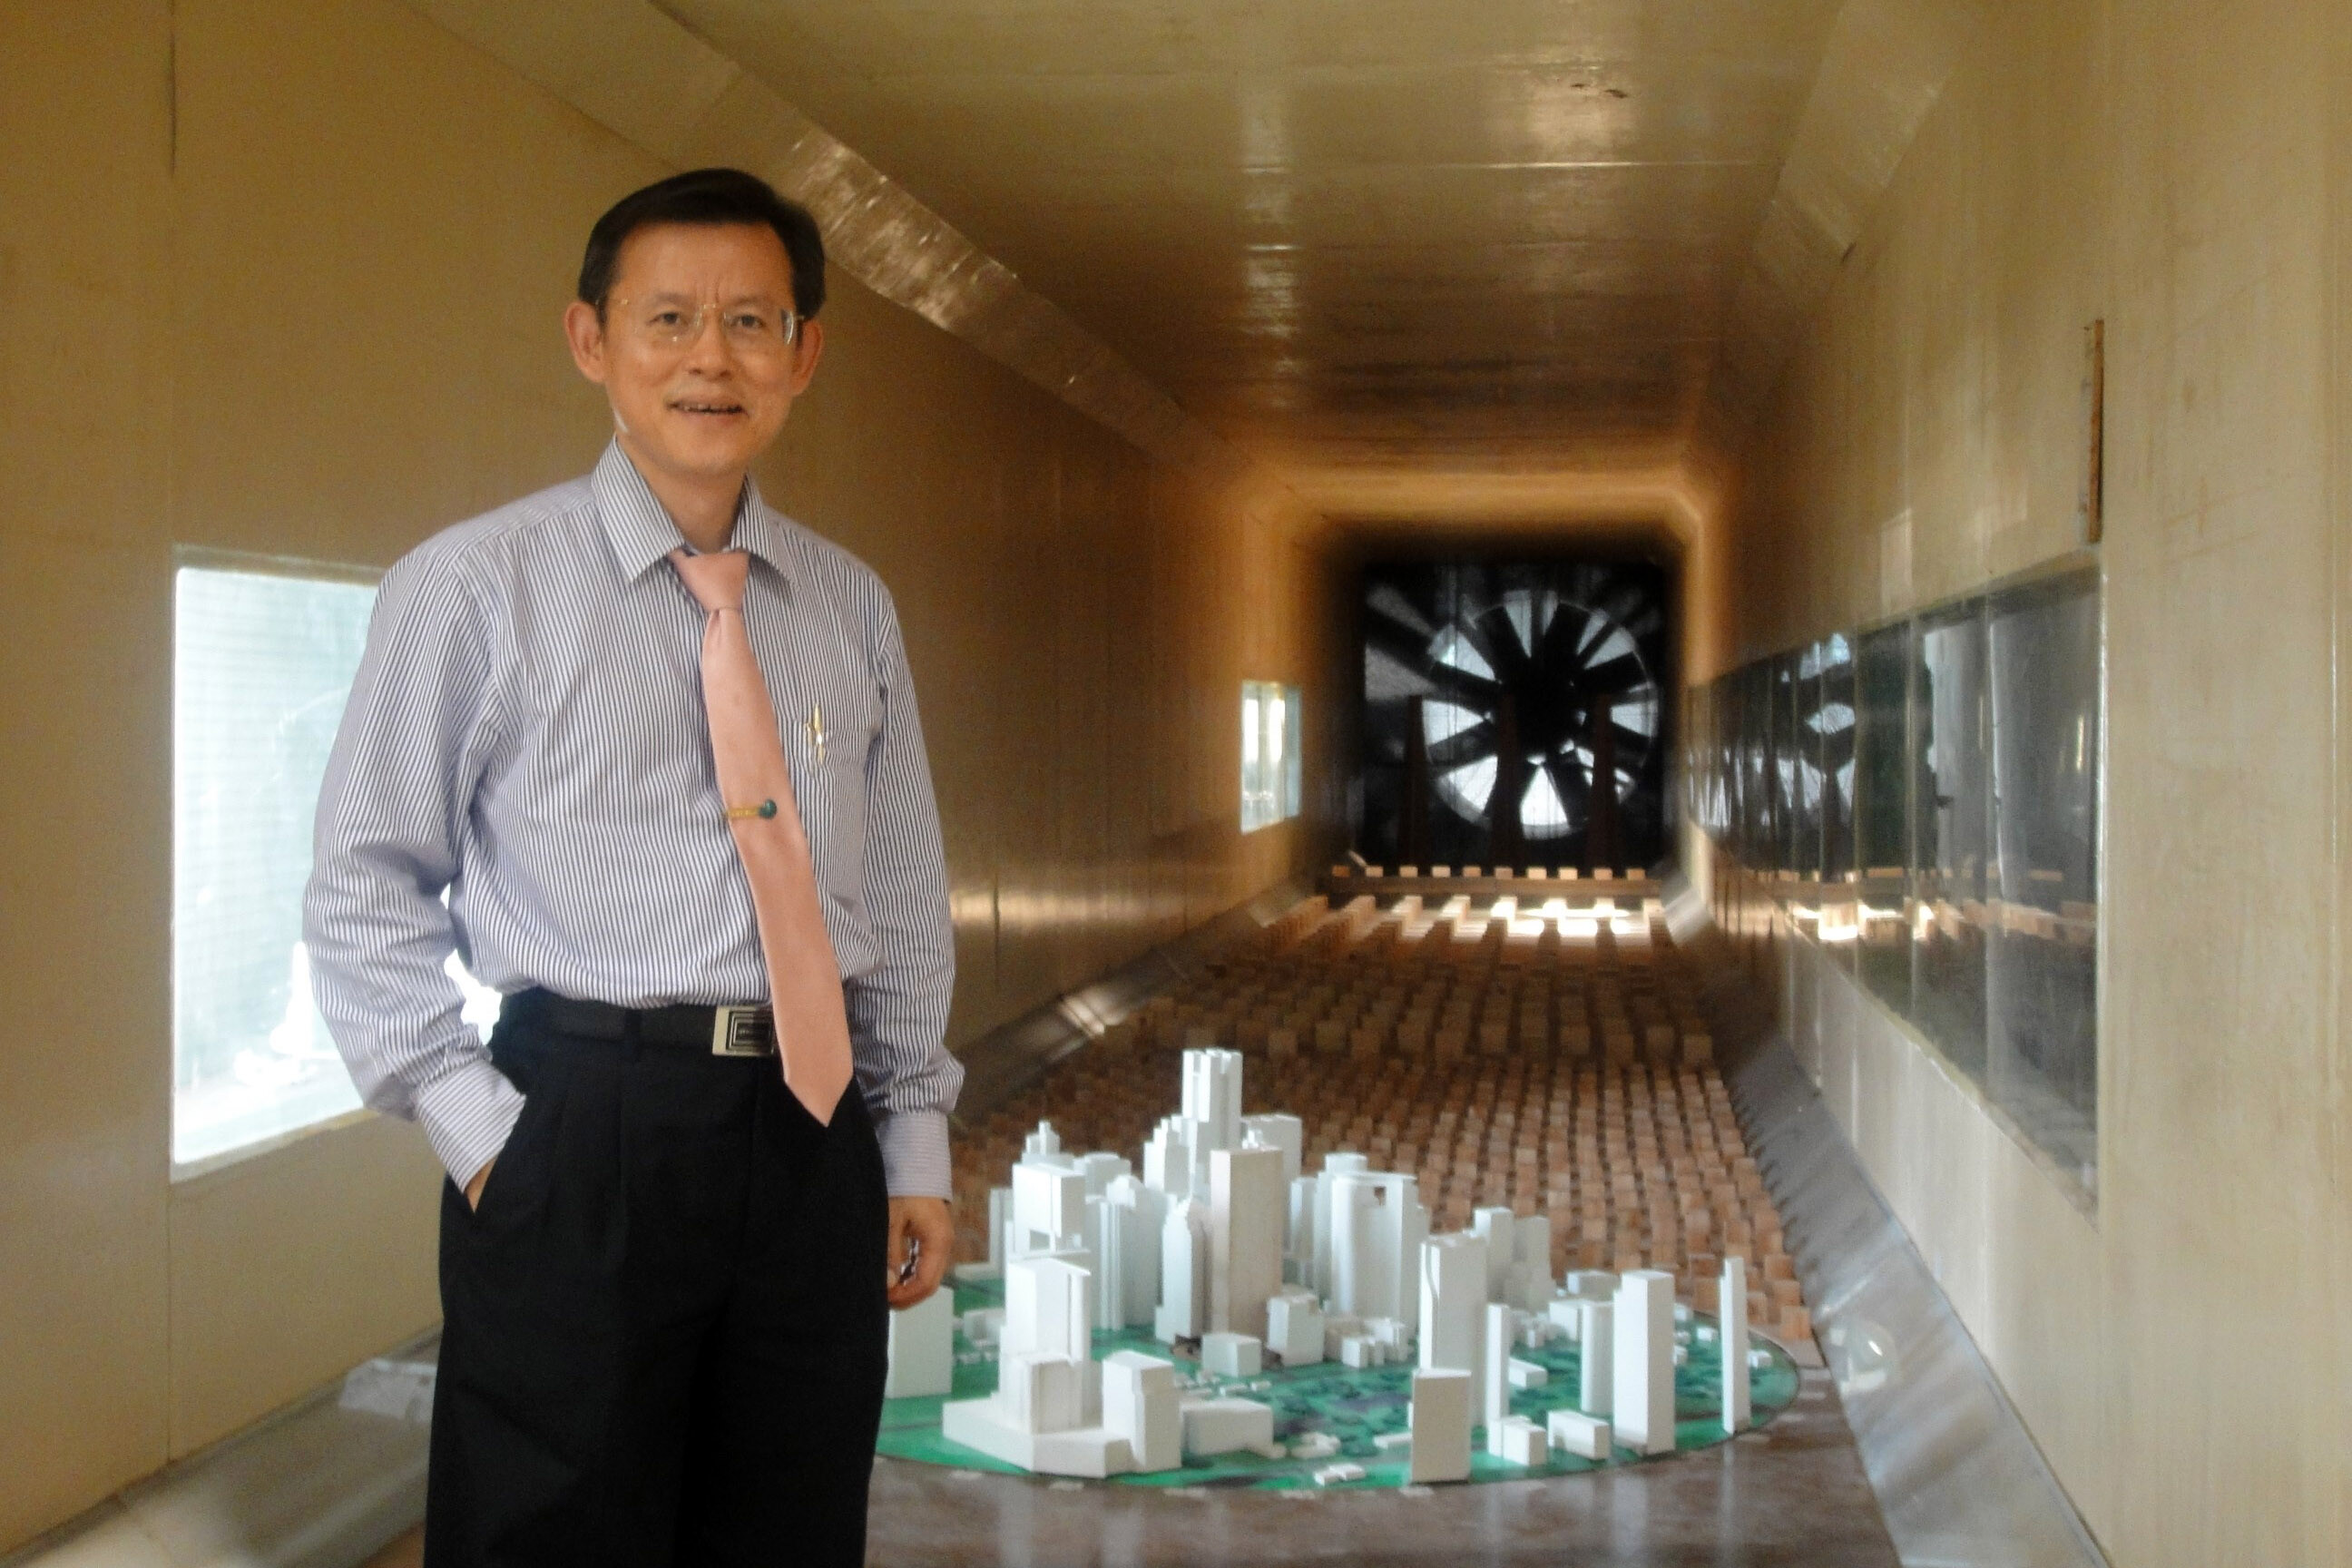 ใหญ่สุดในไทย ! วิศวฯธรรมศาสตร์ จับมือ เอไอที ชูศักยภาพ “แล็บอุโมงค์ลม”    รองรับการก่อสร้างเมกะโปรเจกต์ อาคาร สะพาน ลดการพึ่งพาต่างชาติ